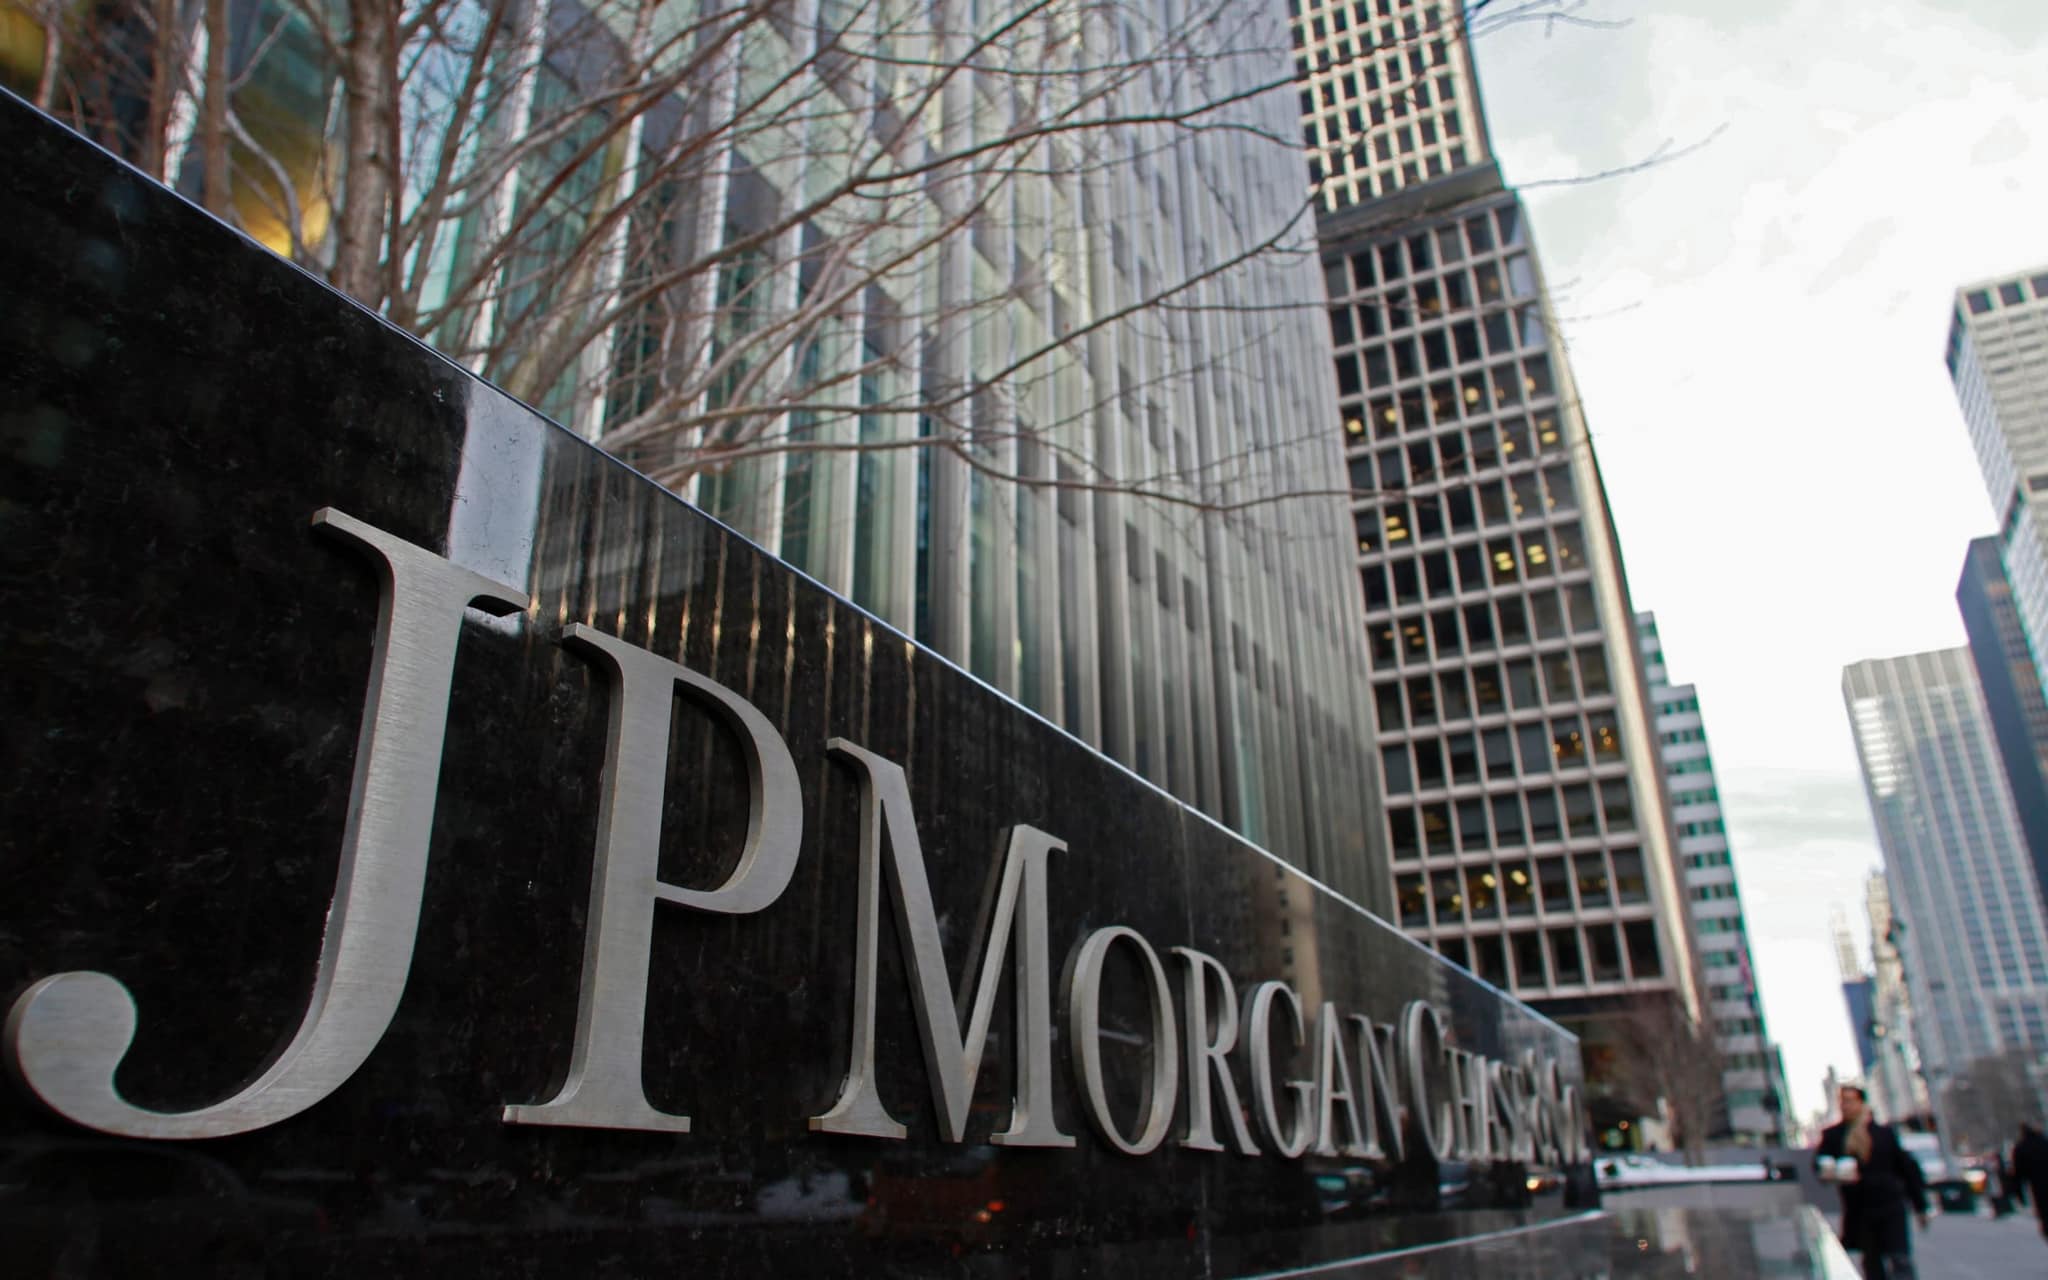 Vì sao thị trường đột ngột chuyển sang trạng thái “Risk On”? Nhận định của JPMorgan Chase